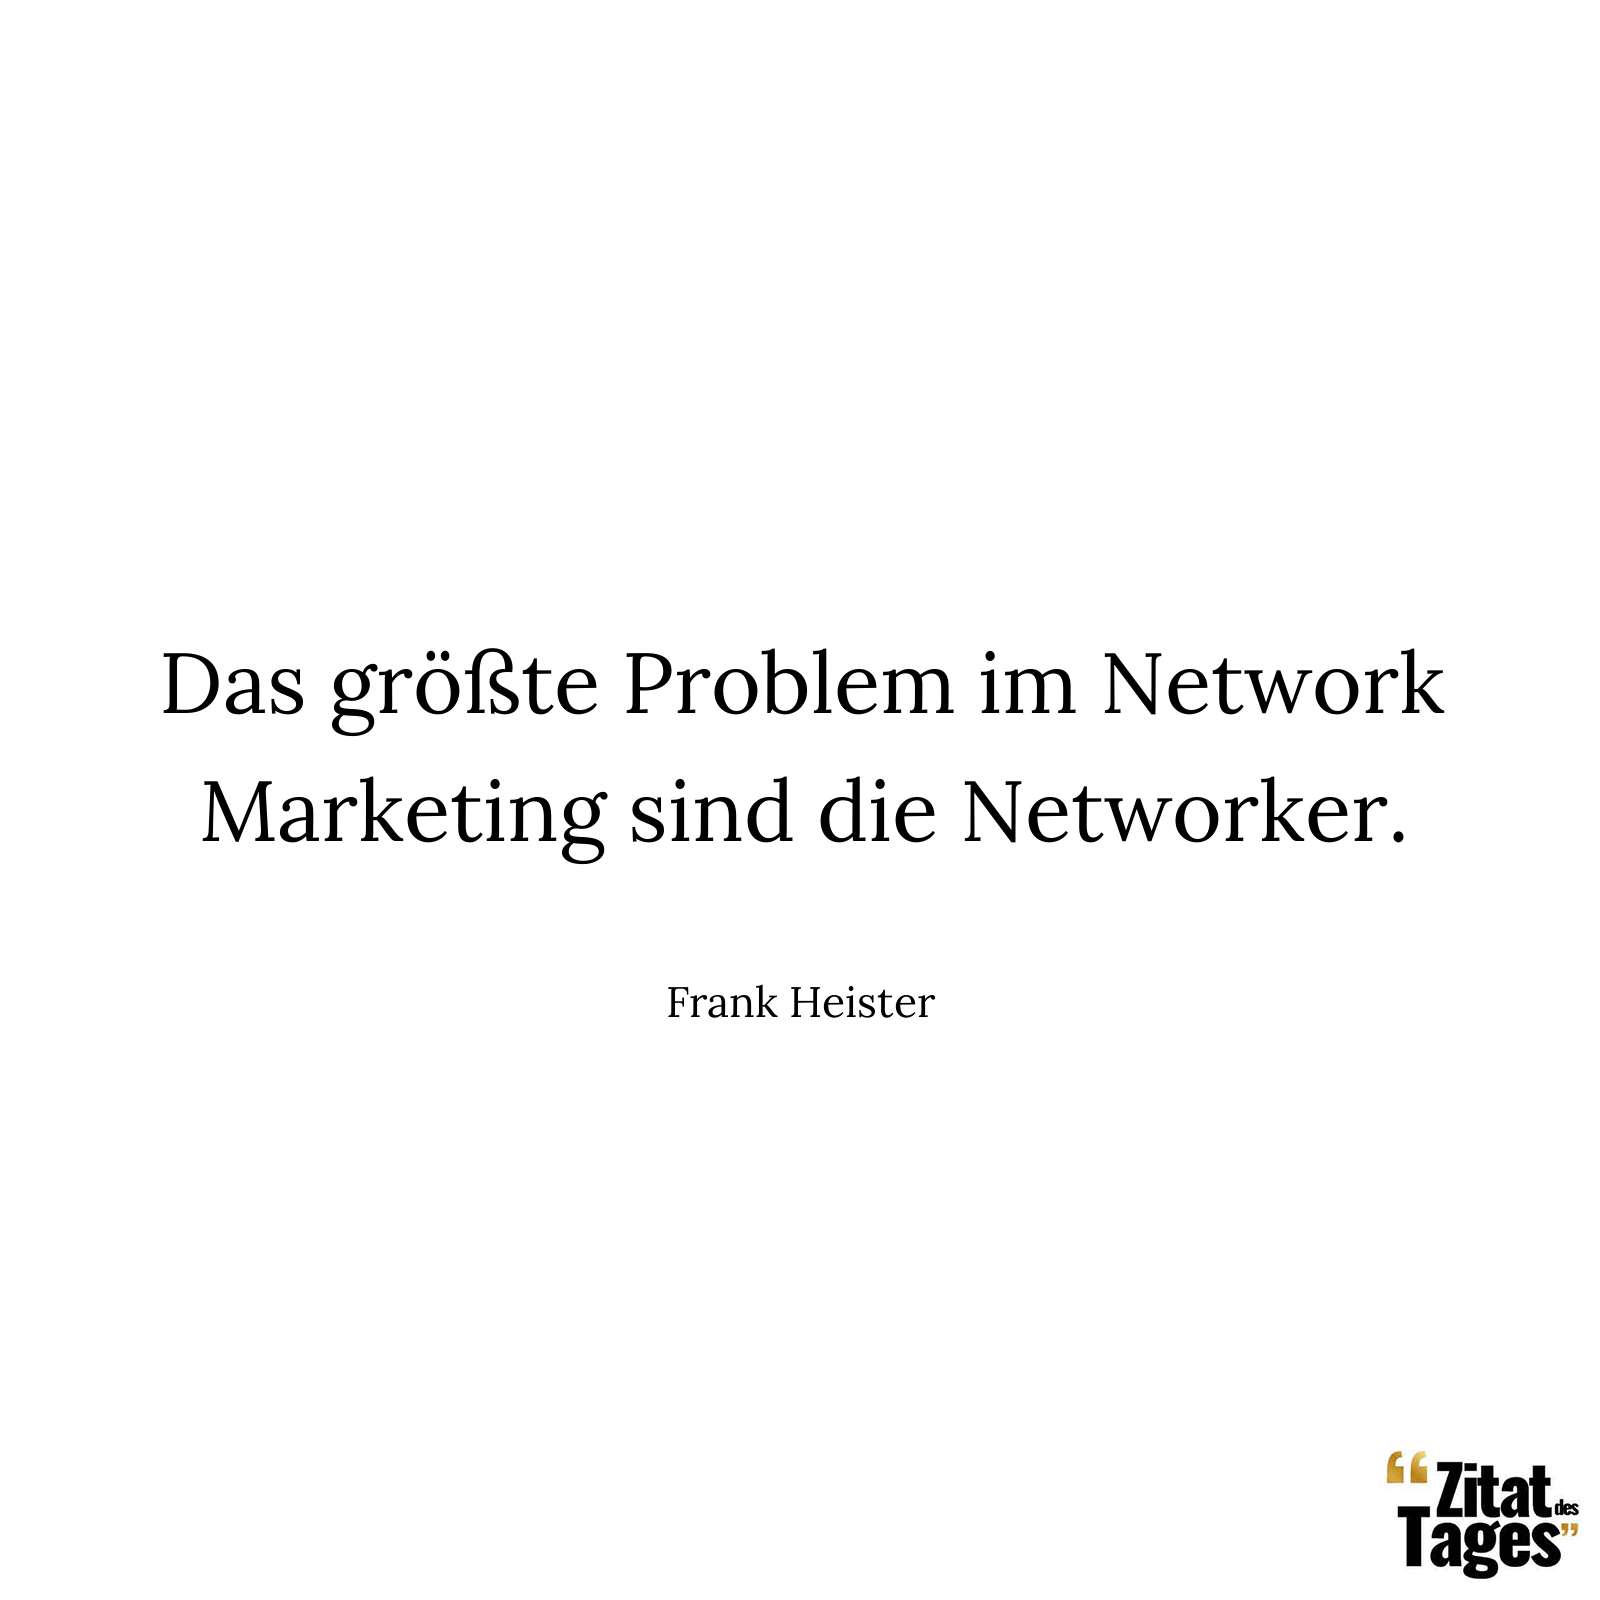 Das größte Problem im Network Marketing sind die Networker. - Frank Heister